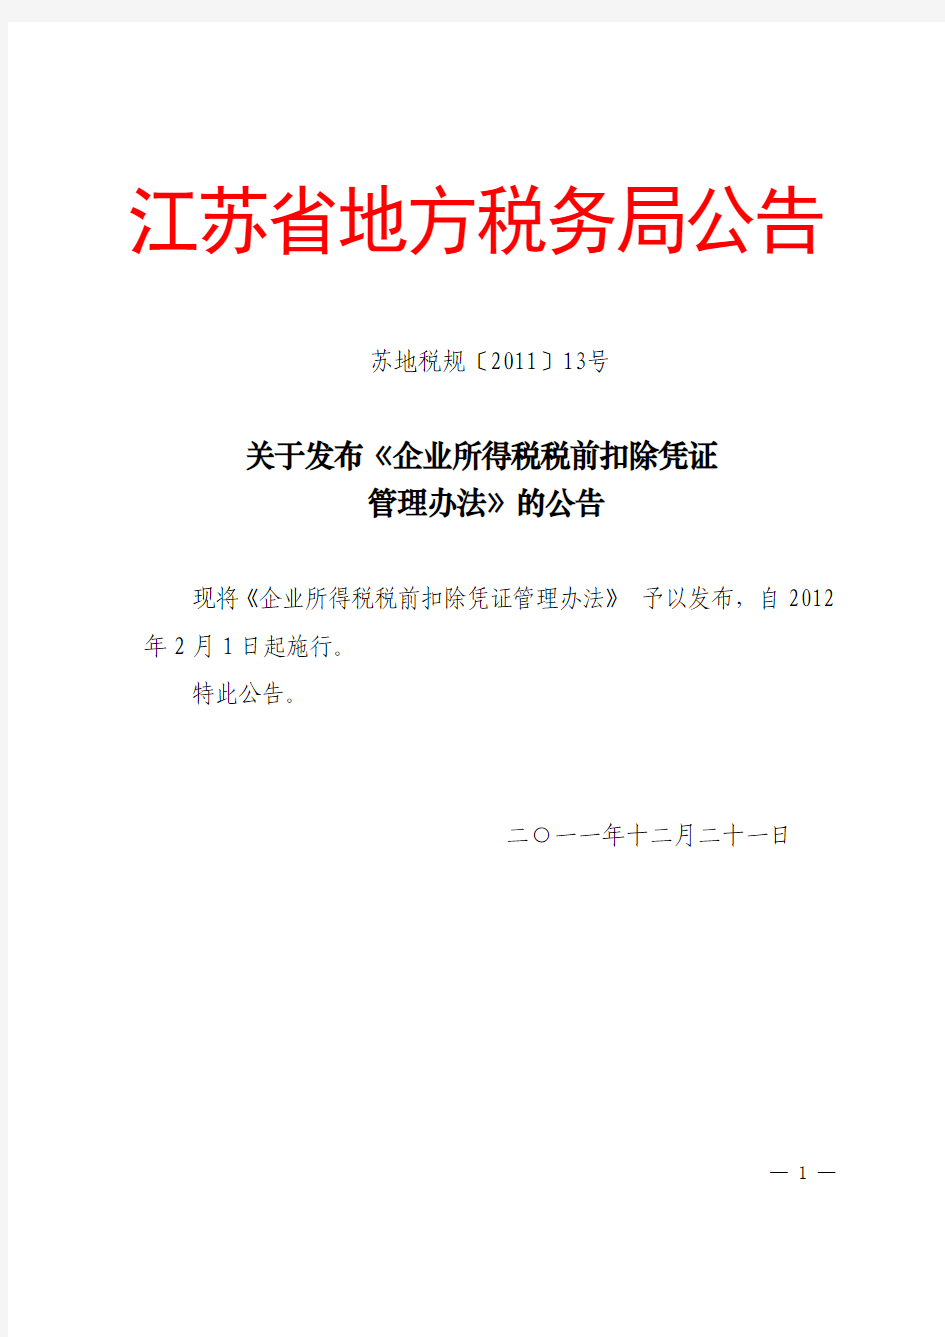 苏地税规[2011]13号---江苏省地方税务局关于发布《企业所得税税前扣除凭证管理办法》的公告